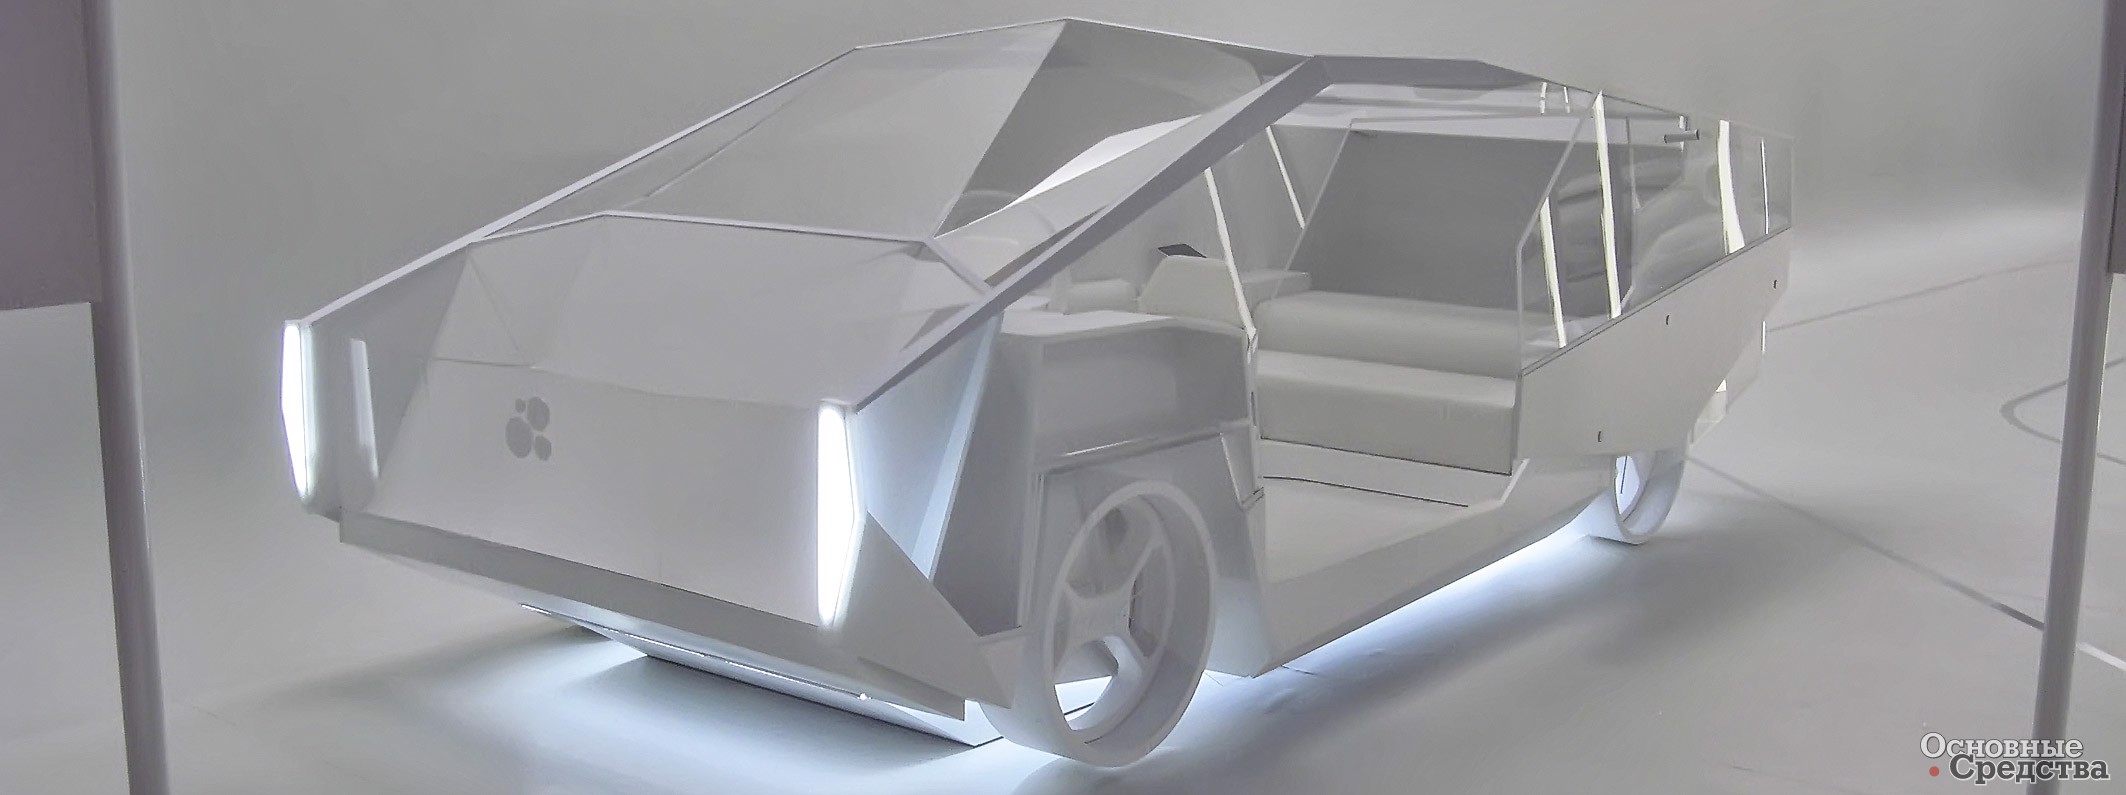 Макет беспилотного автомобиля будущего